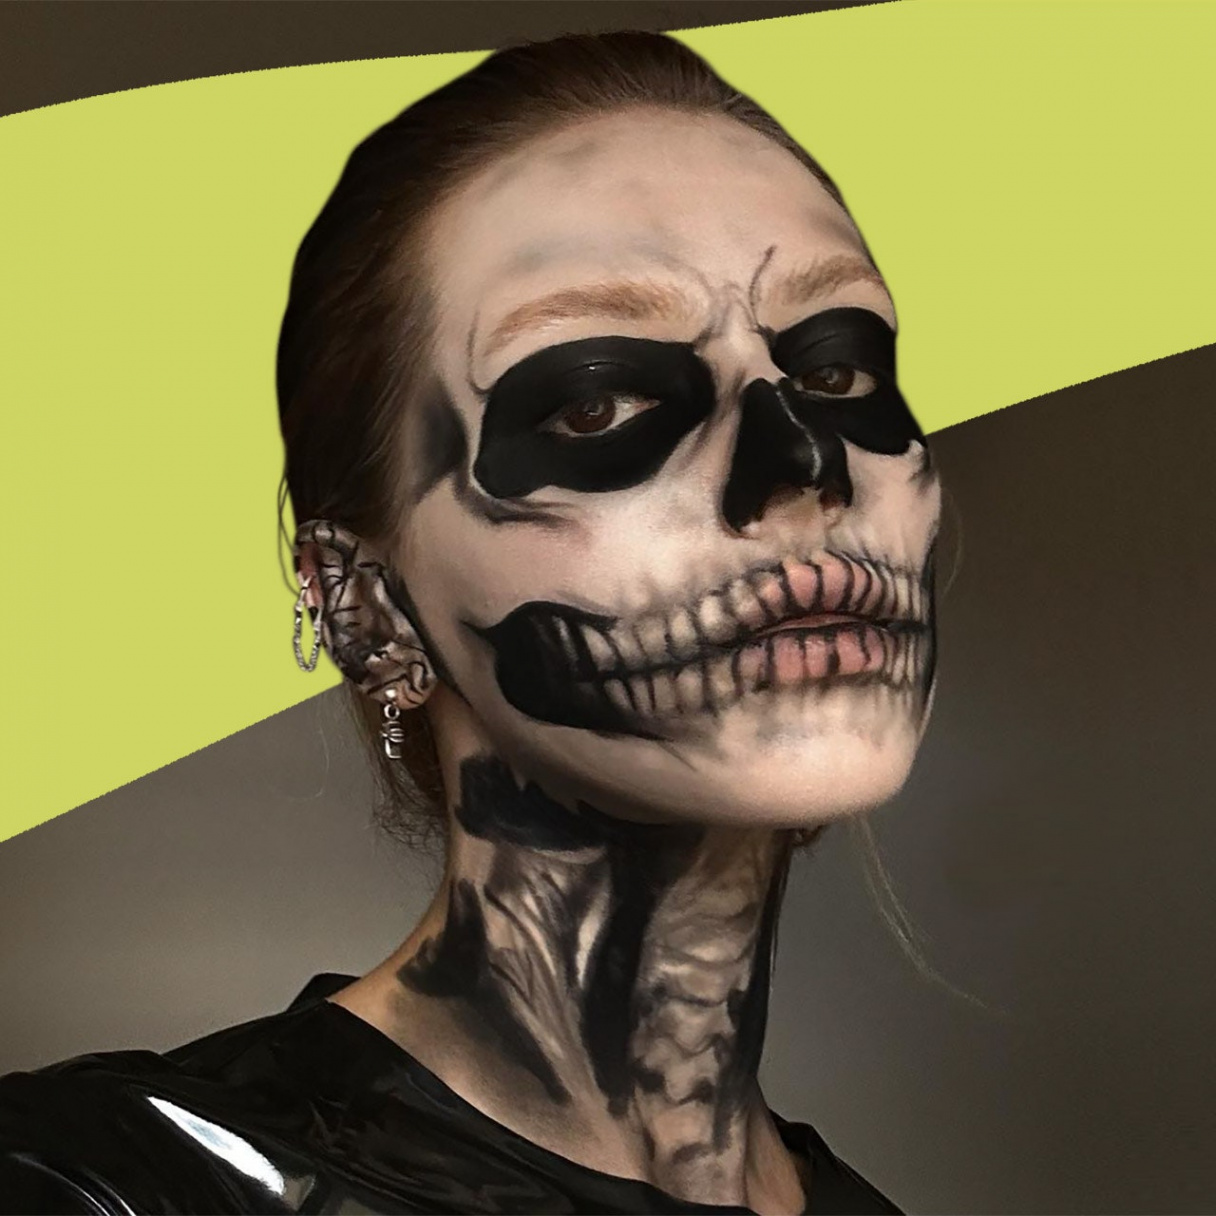 Skeleton Makeup and Skull Tutorials to Win Halloween